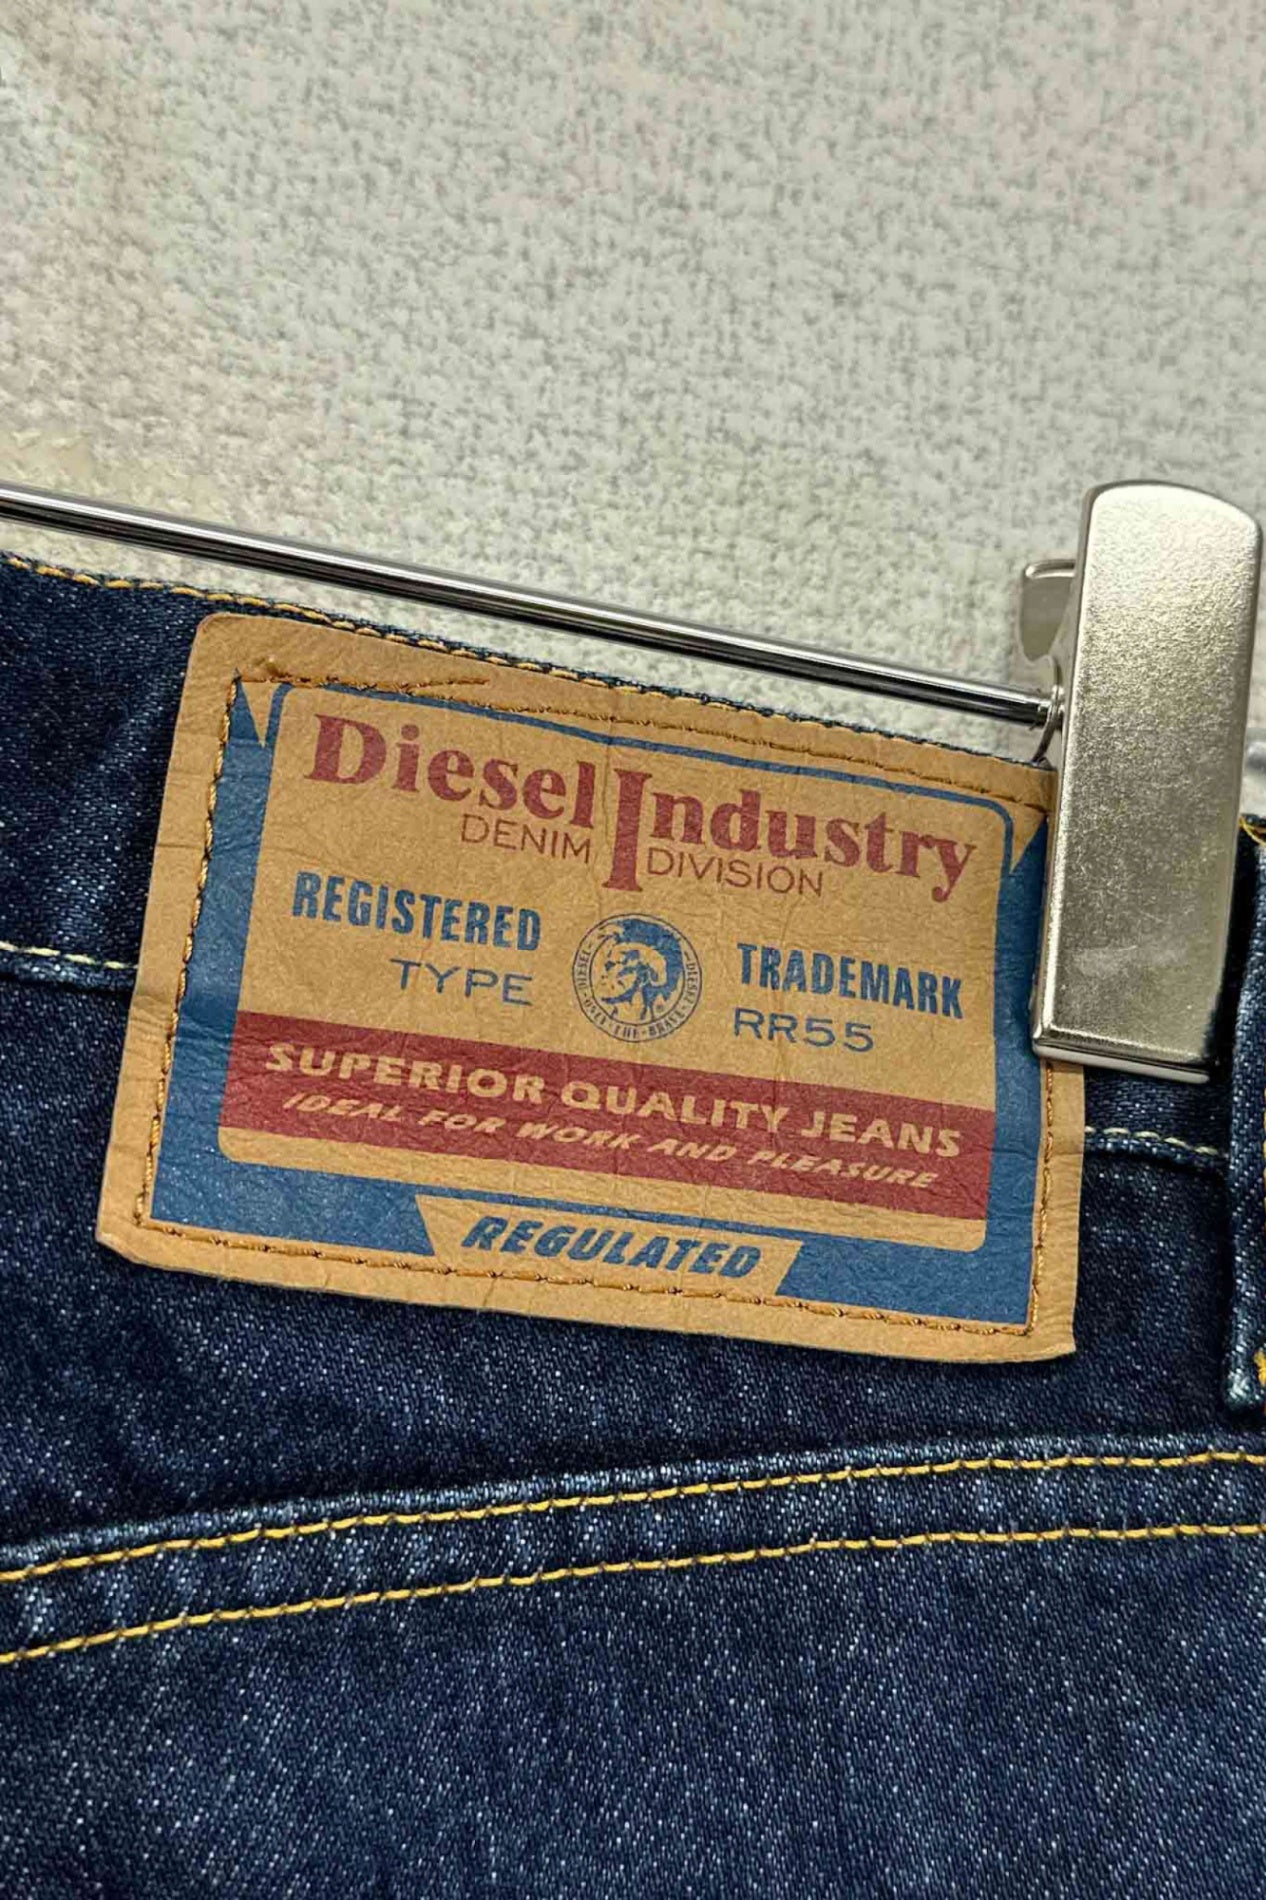 意大利制造 Diesel Industry 牛仔裤